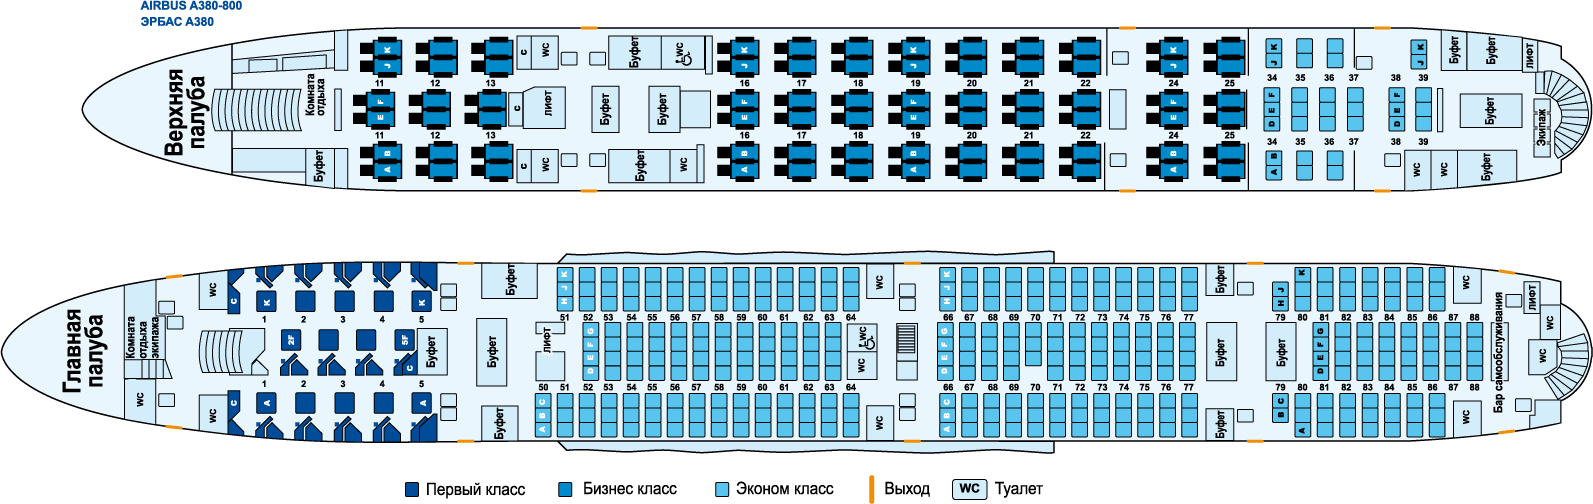 ✈ самолет аэробус а350-900: нумерация мест в салоне, схема посадочных мест, лучшие места